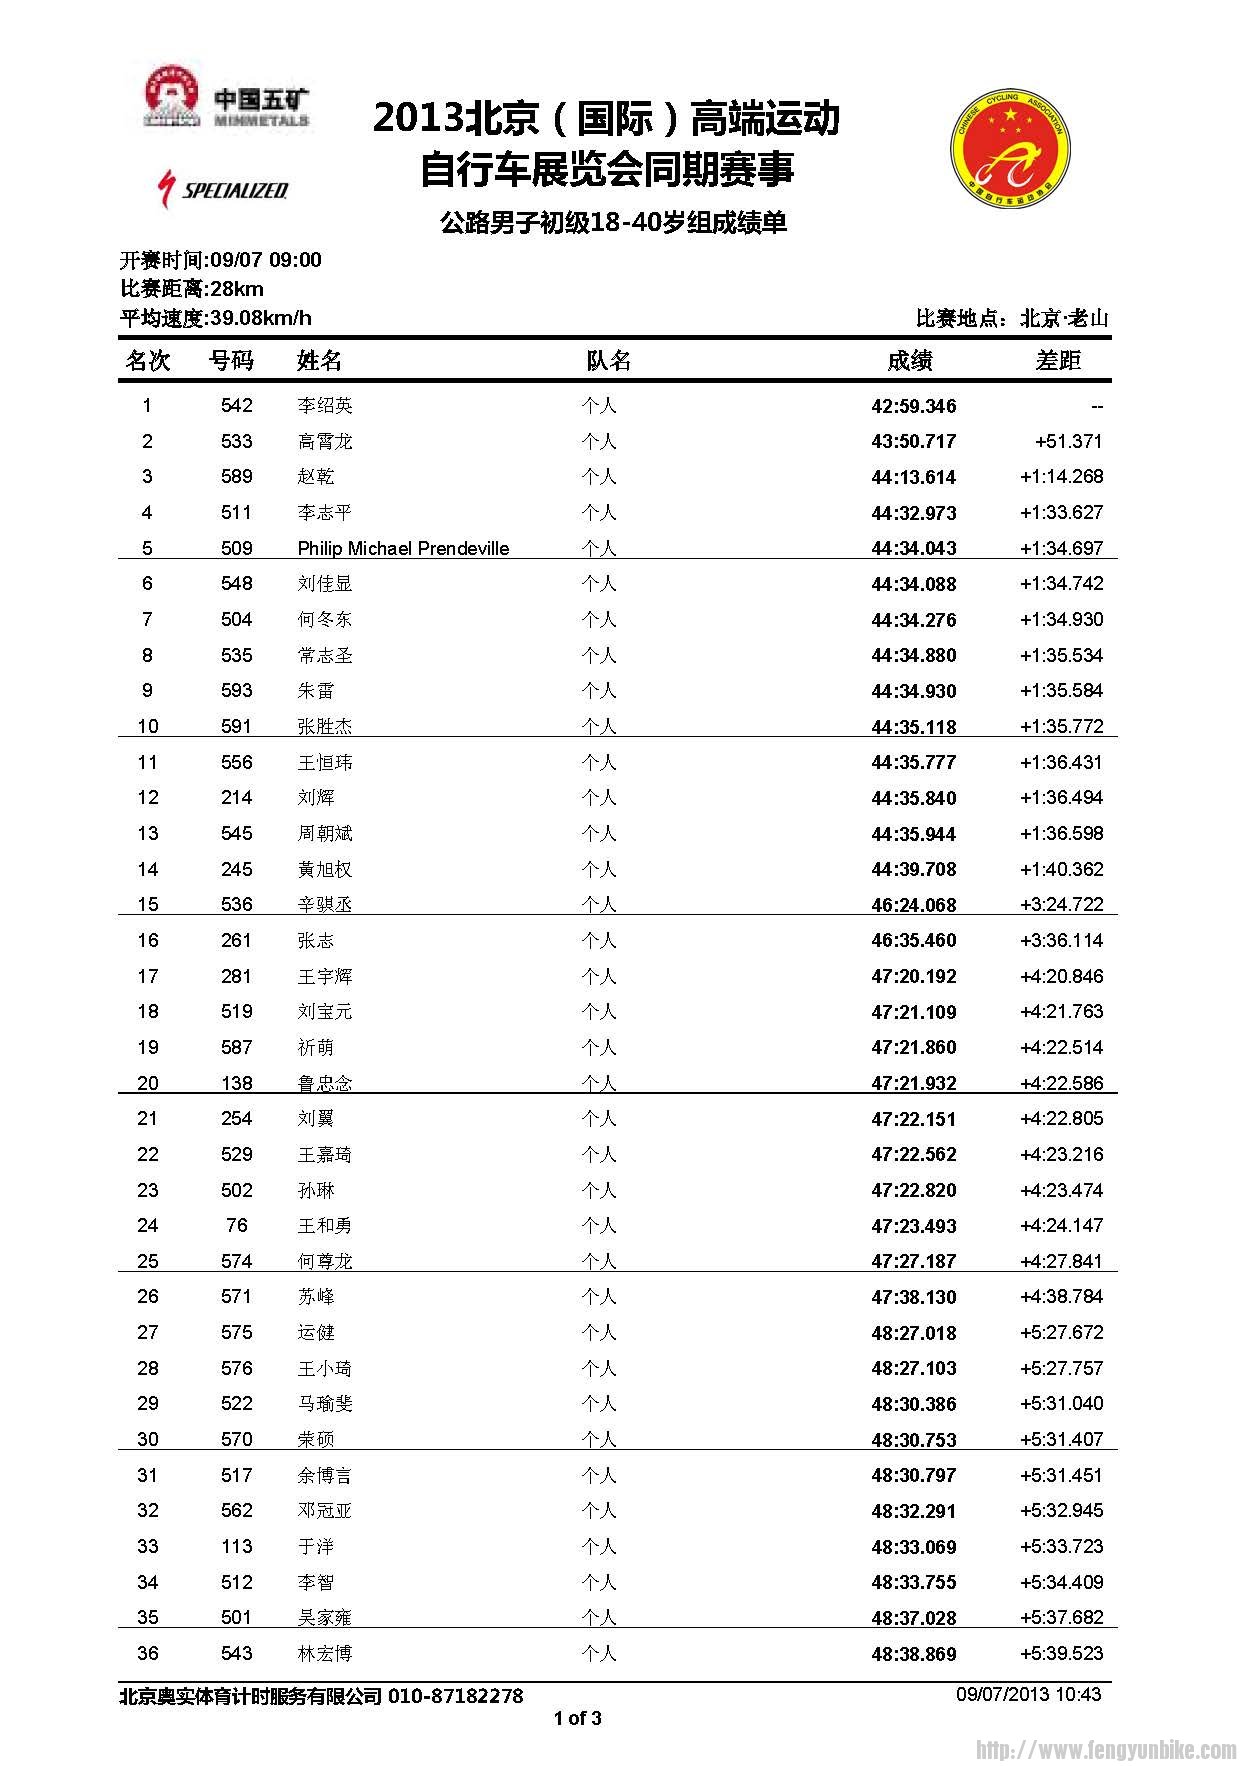 公路男子初级18-40岁组成绩公告_页面_1.jpg